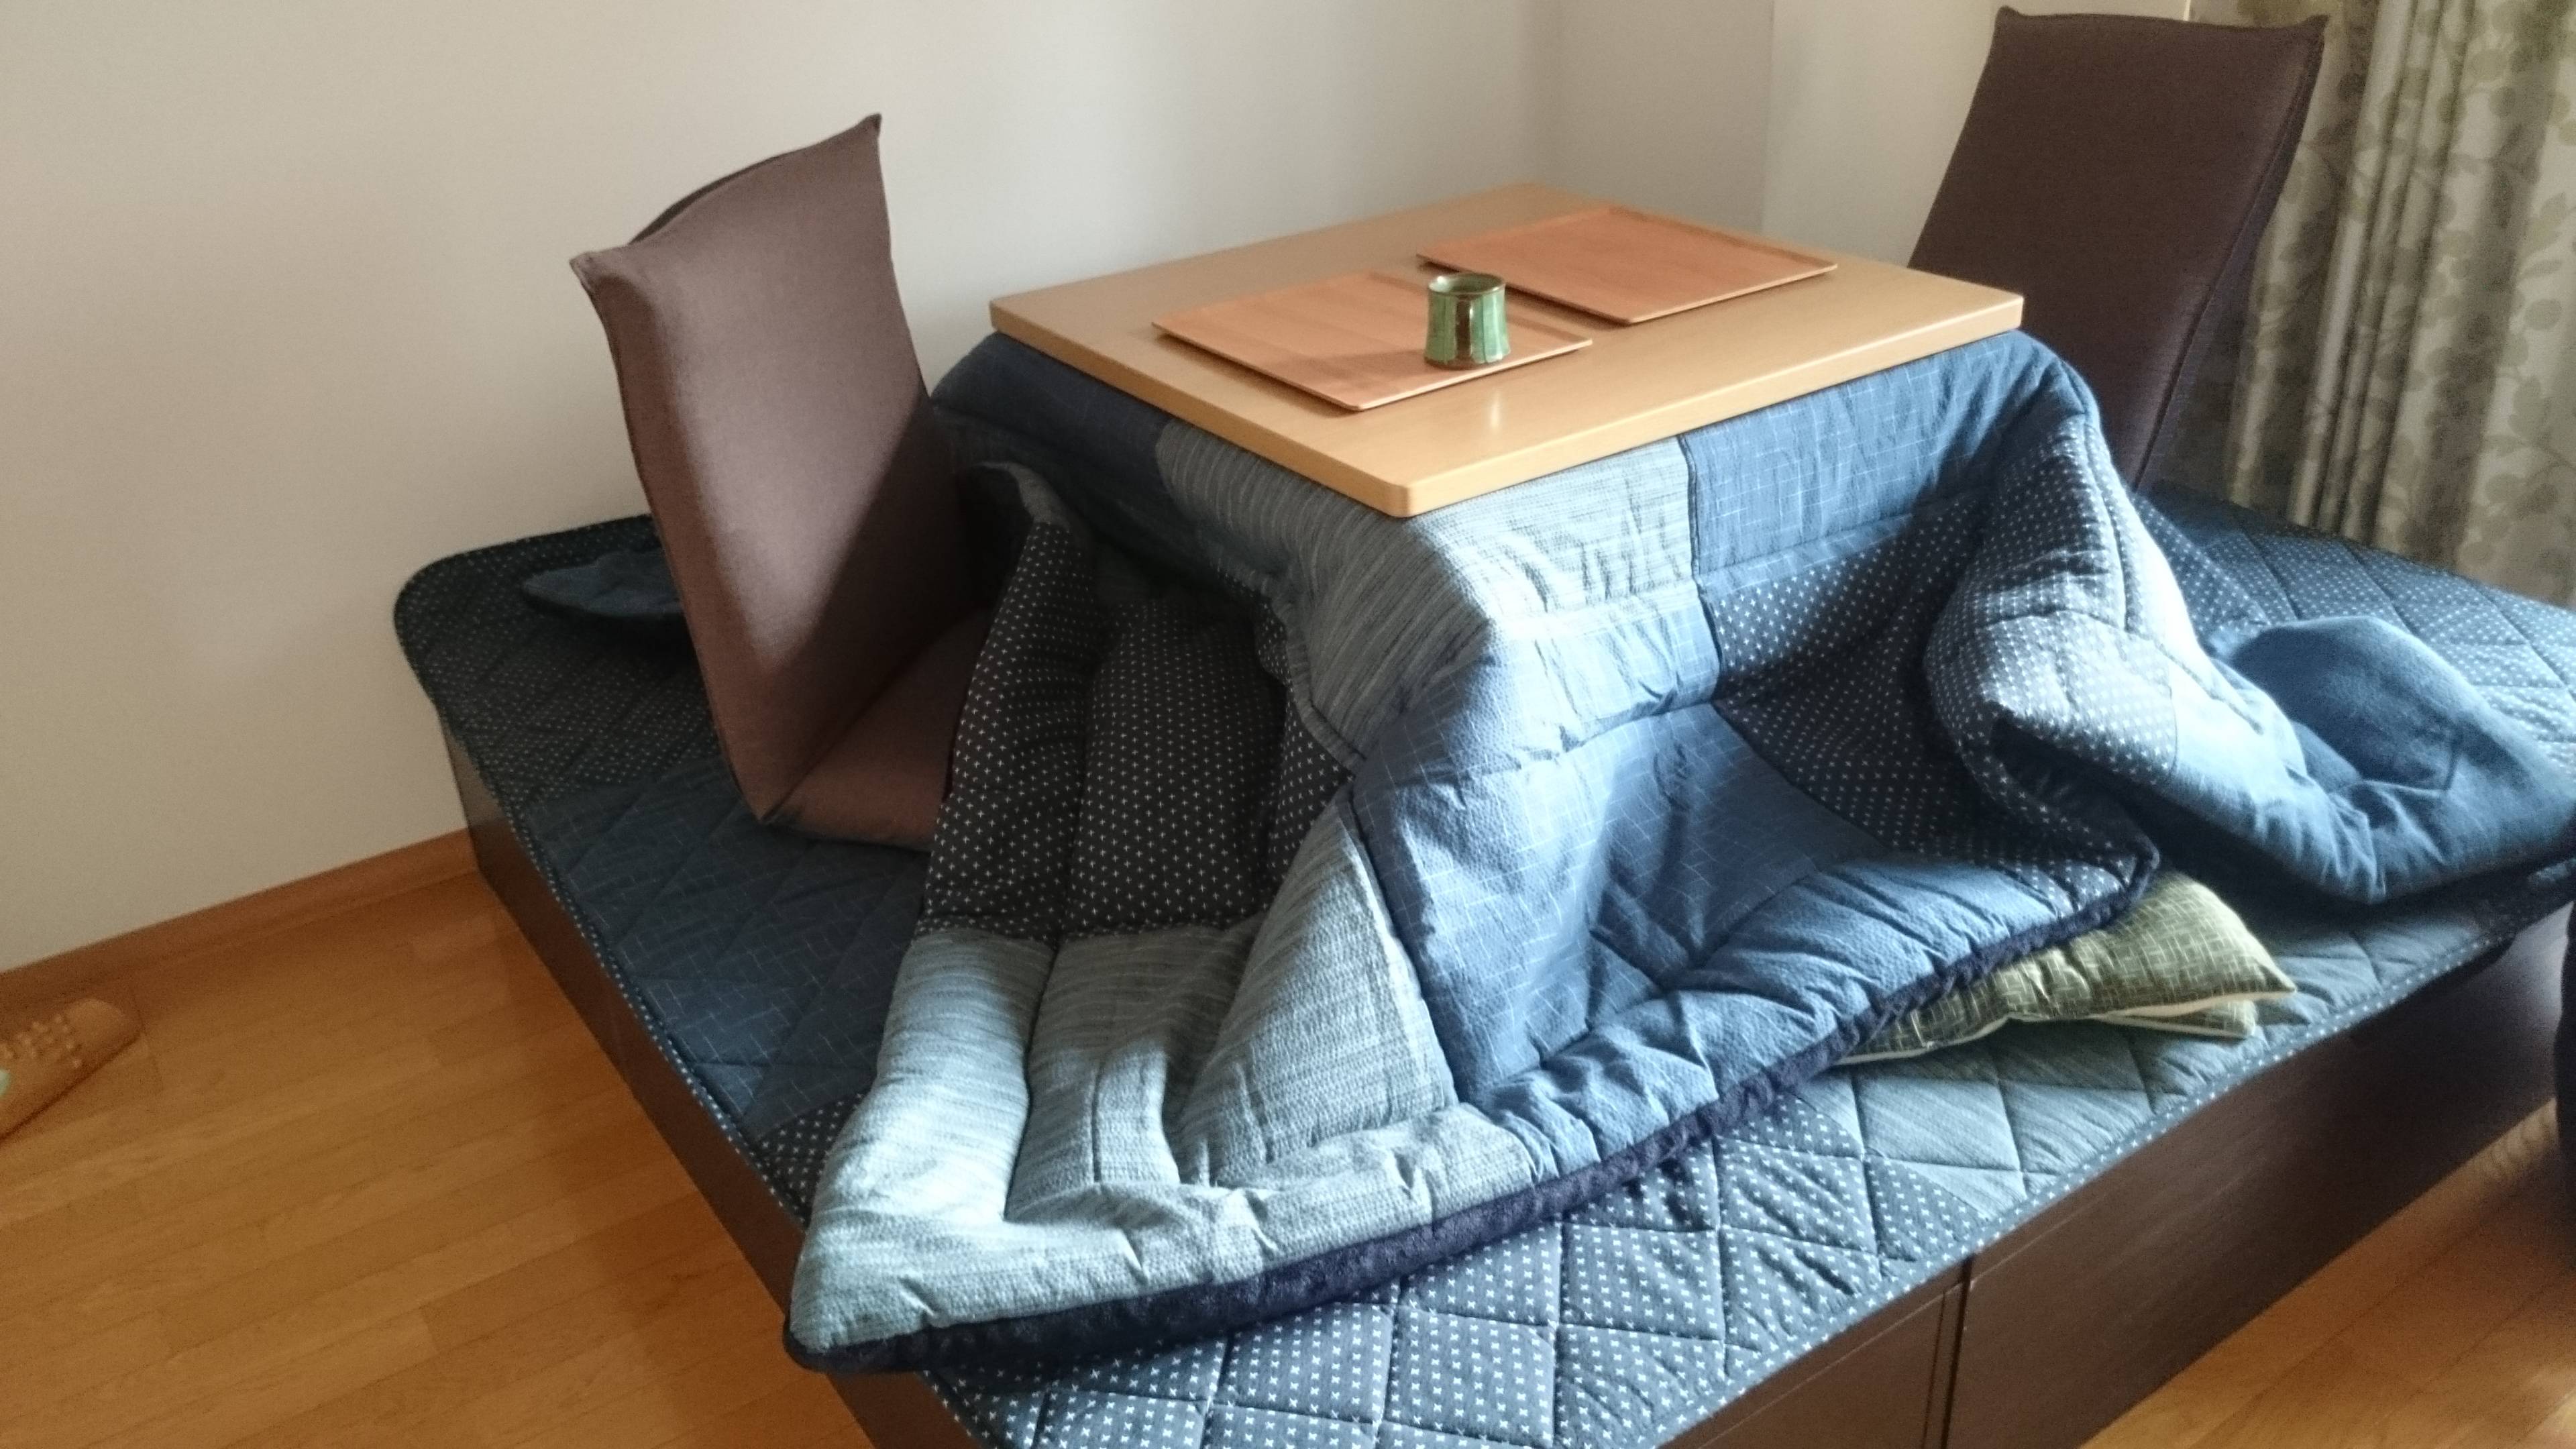 Котацу — гибрид стола, одеяла и обогревателя: как пользоваться, плюсы и минусы